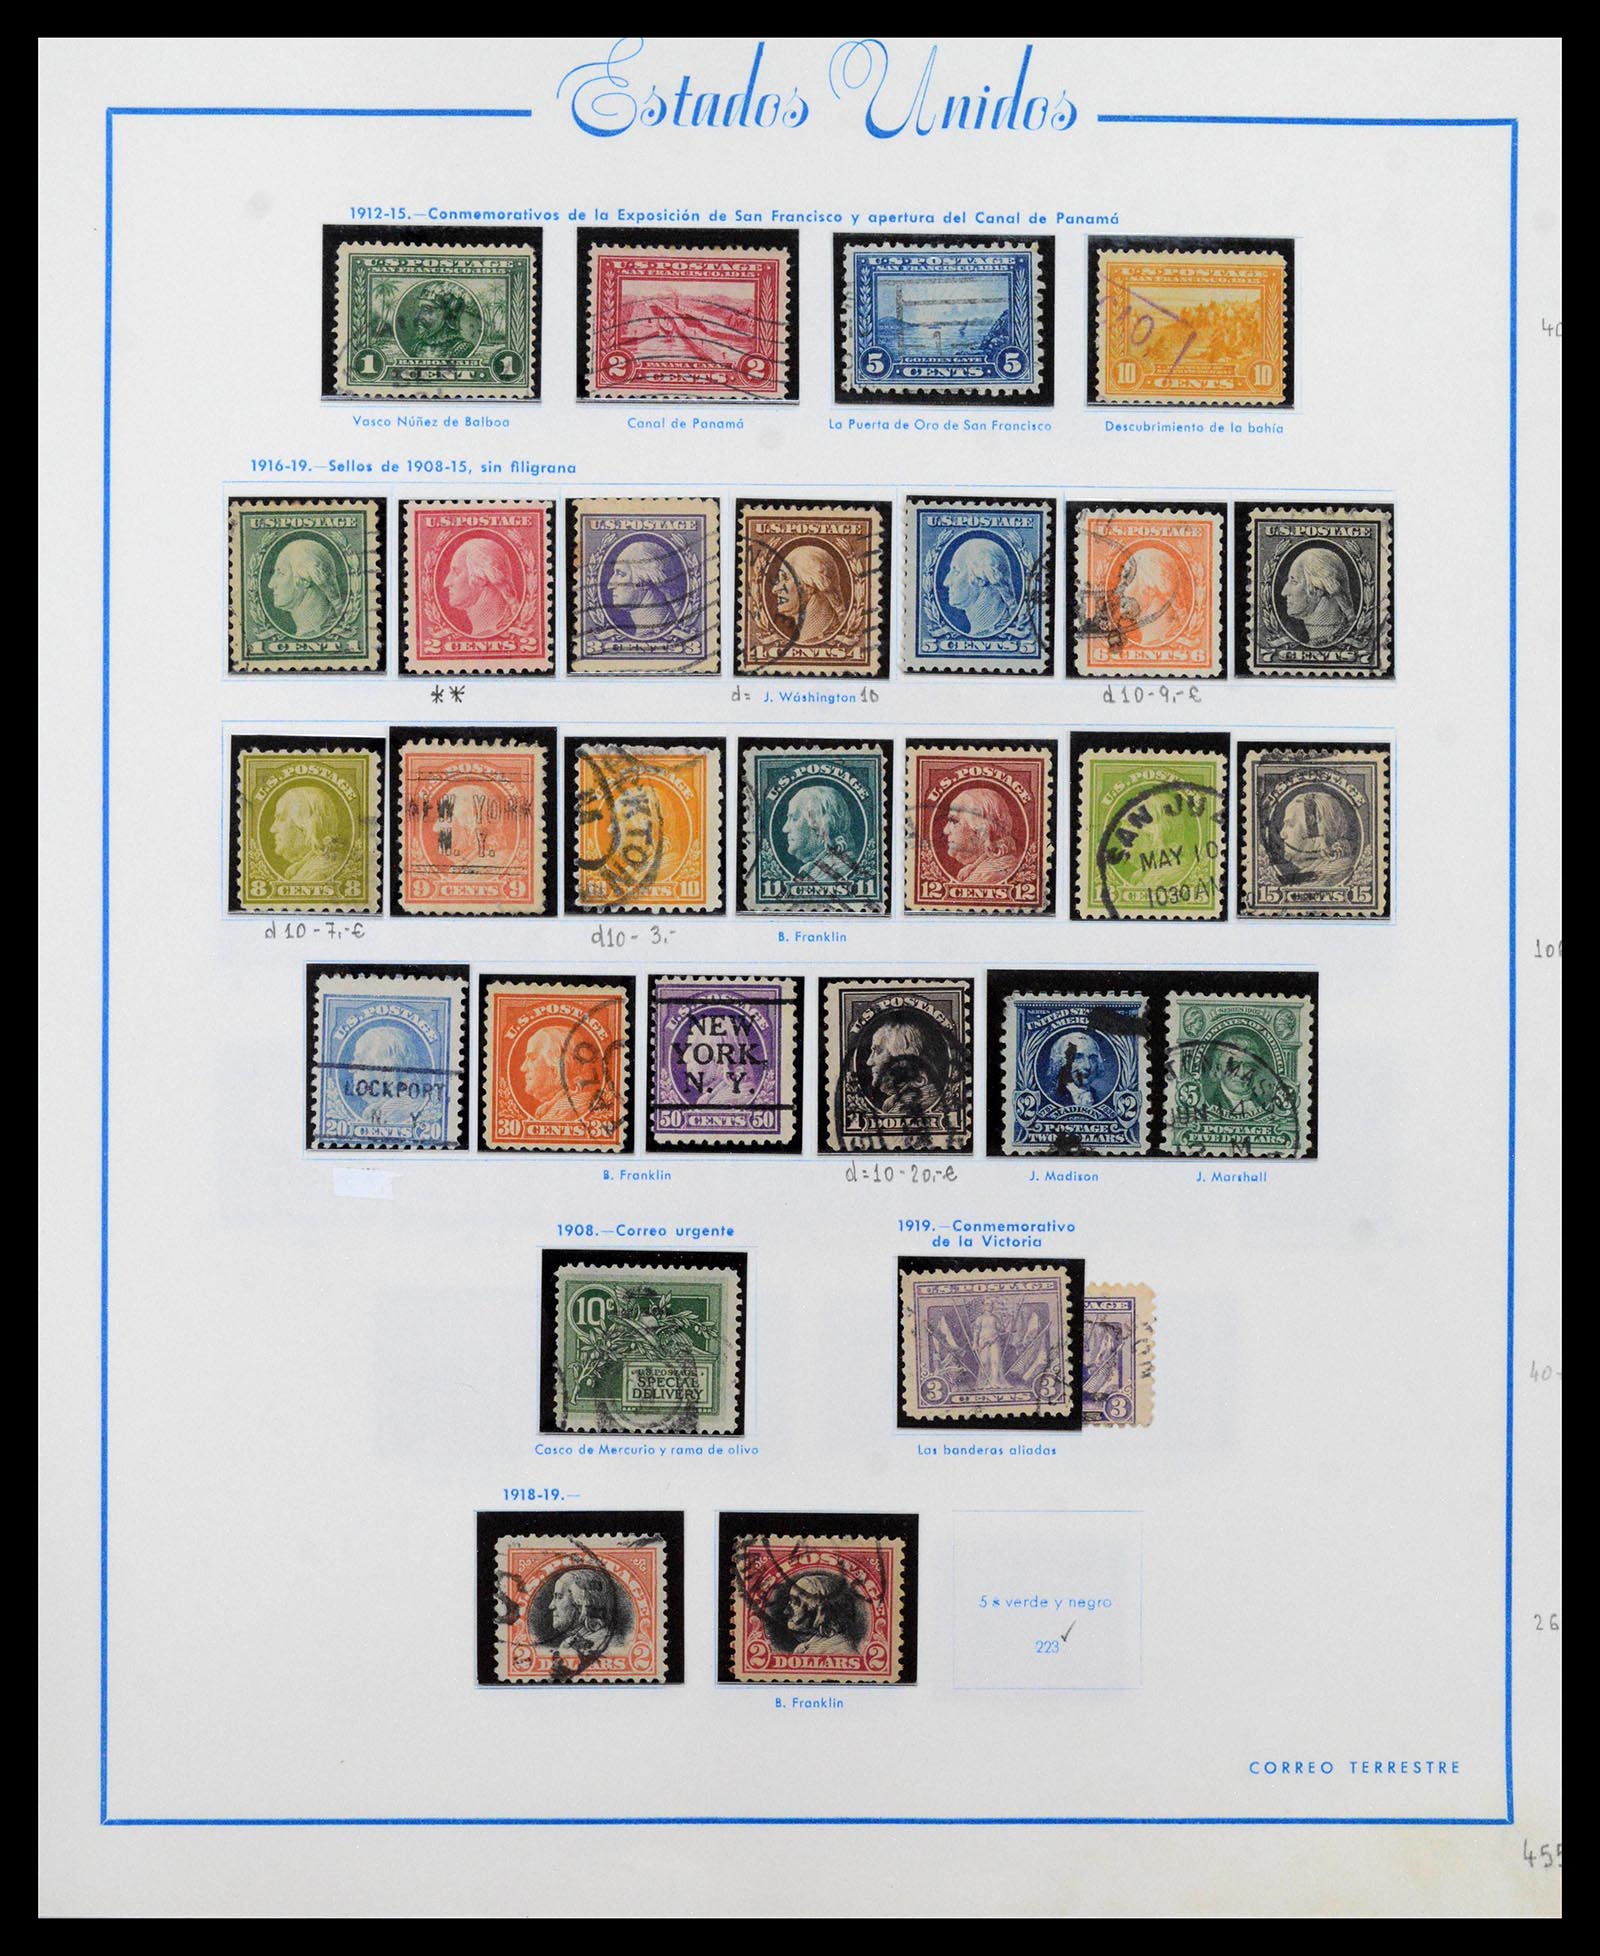 39190 0012 - Stamp collection 39190 USA 1851-1975.